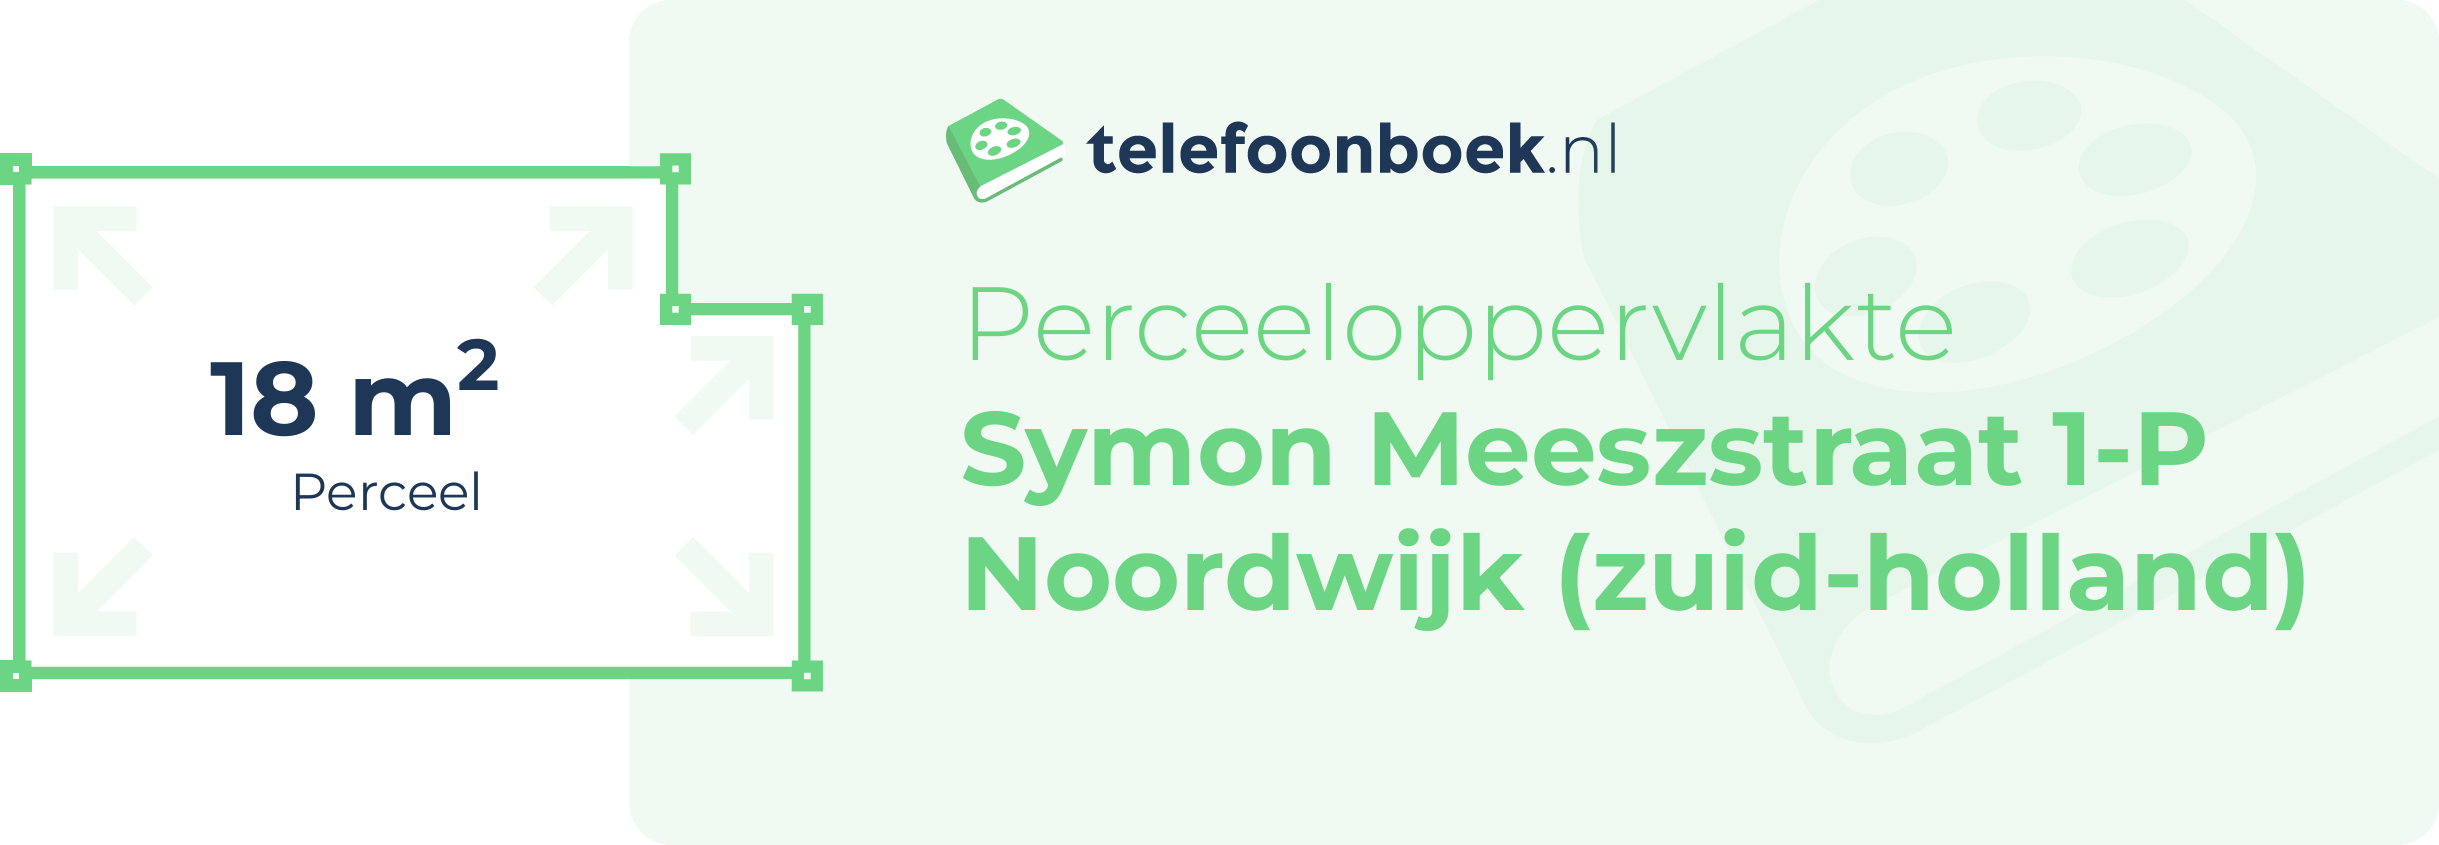 Perceeloppervlakte Symon Meeszstraat 1-P Noordwijk (Zuid-Holland)